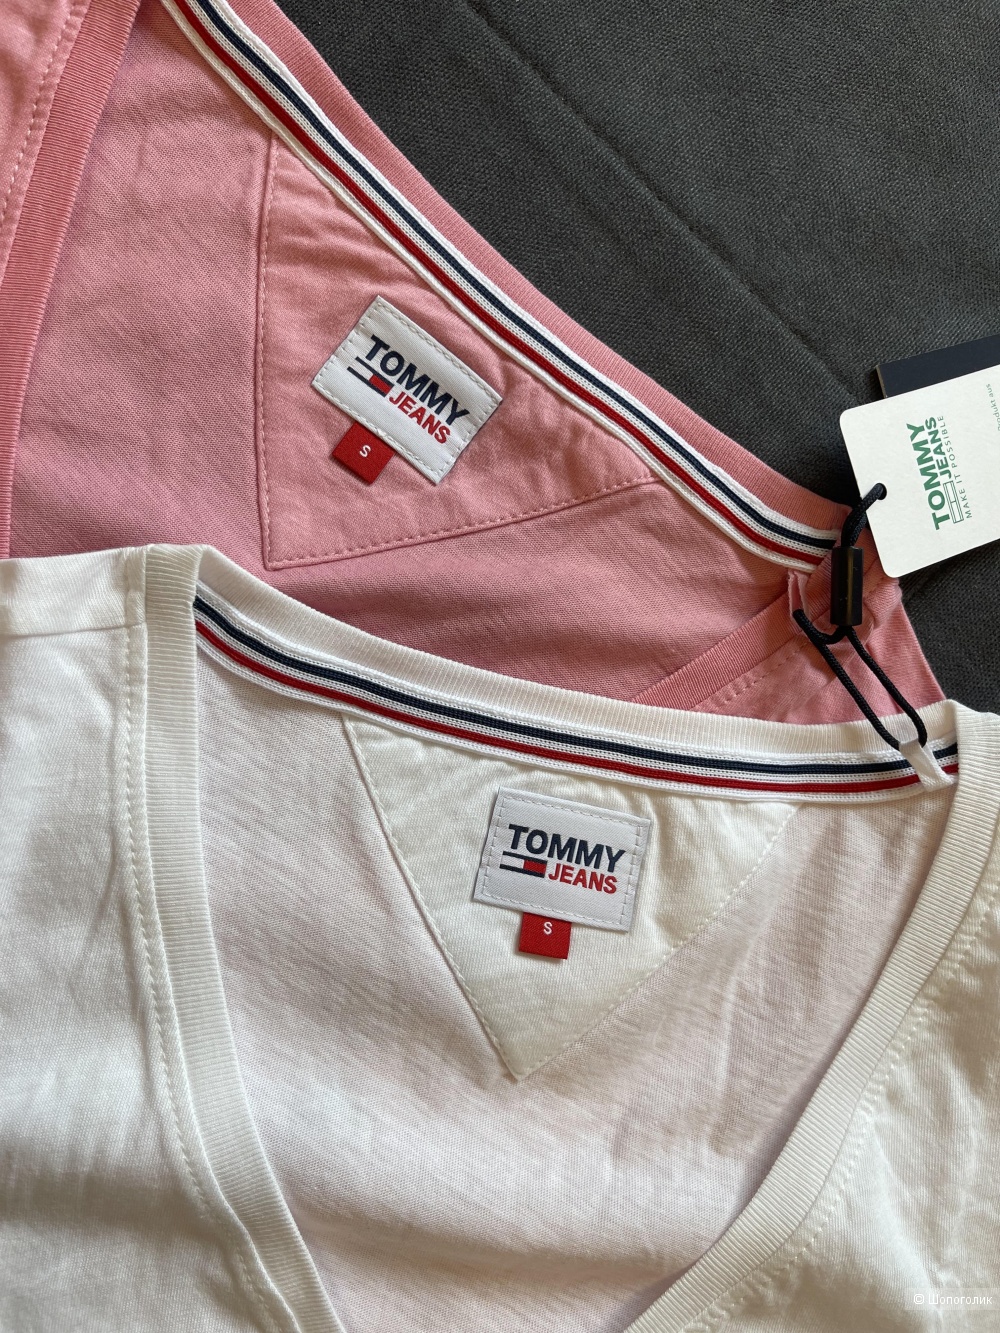 Комплект футболок Tommy Jeans размер S